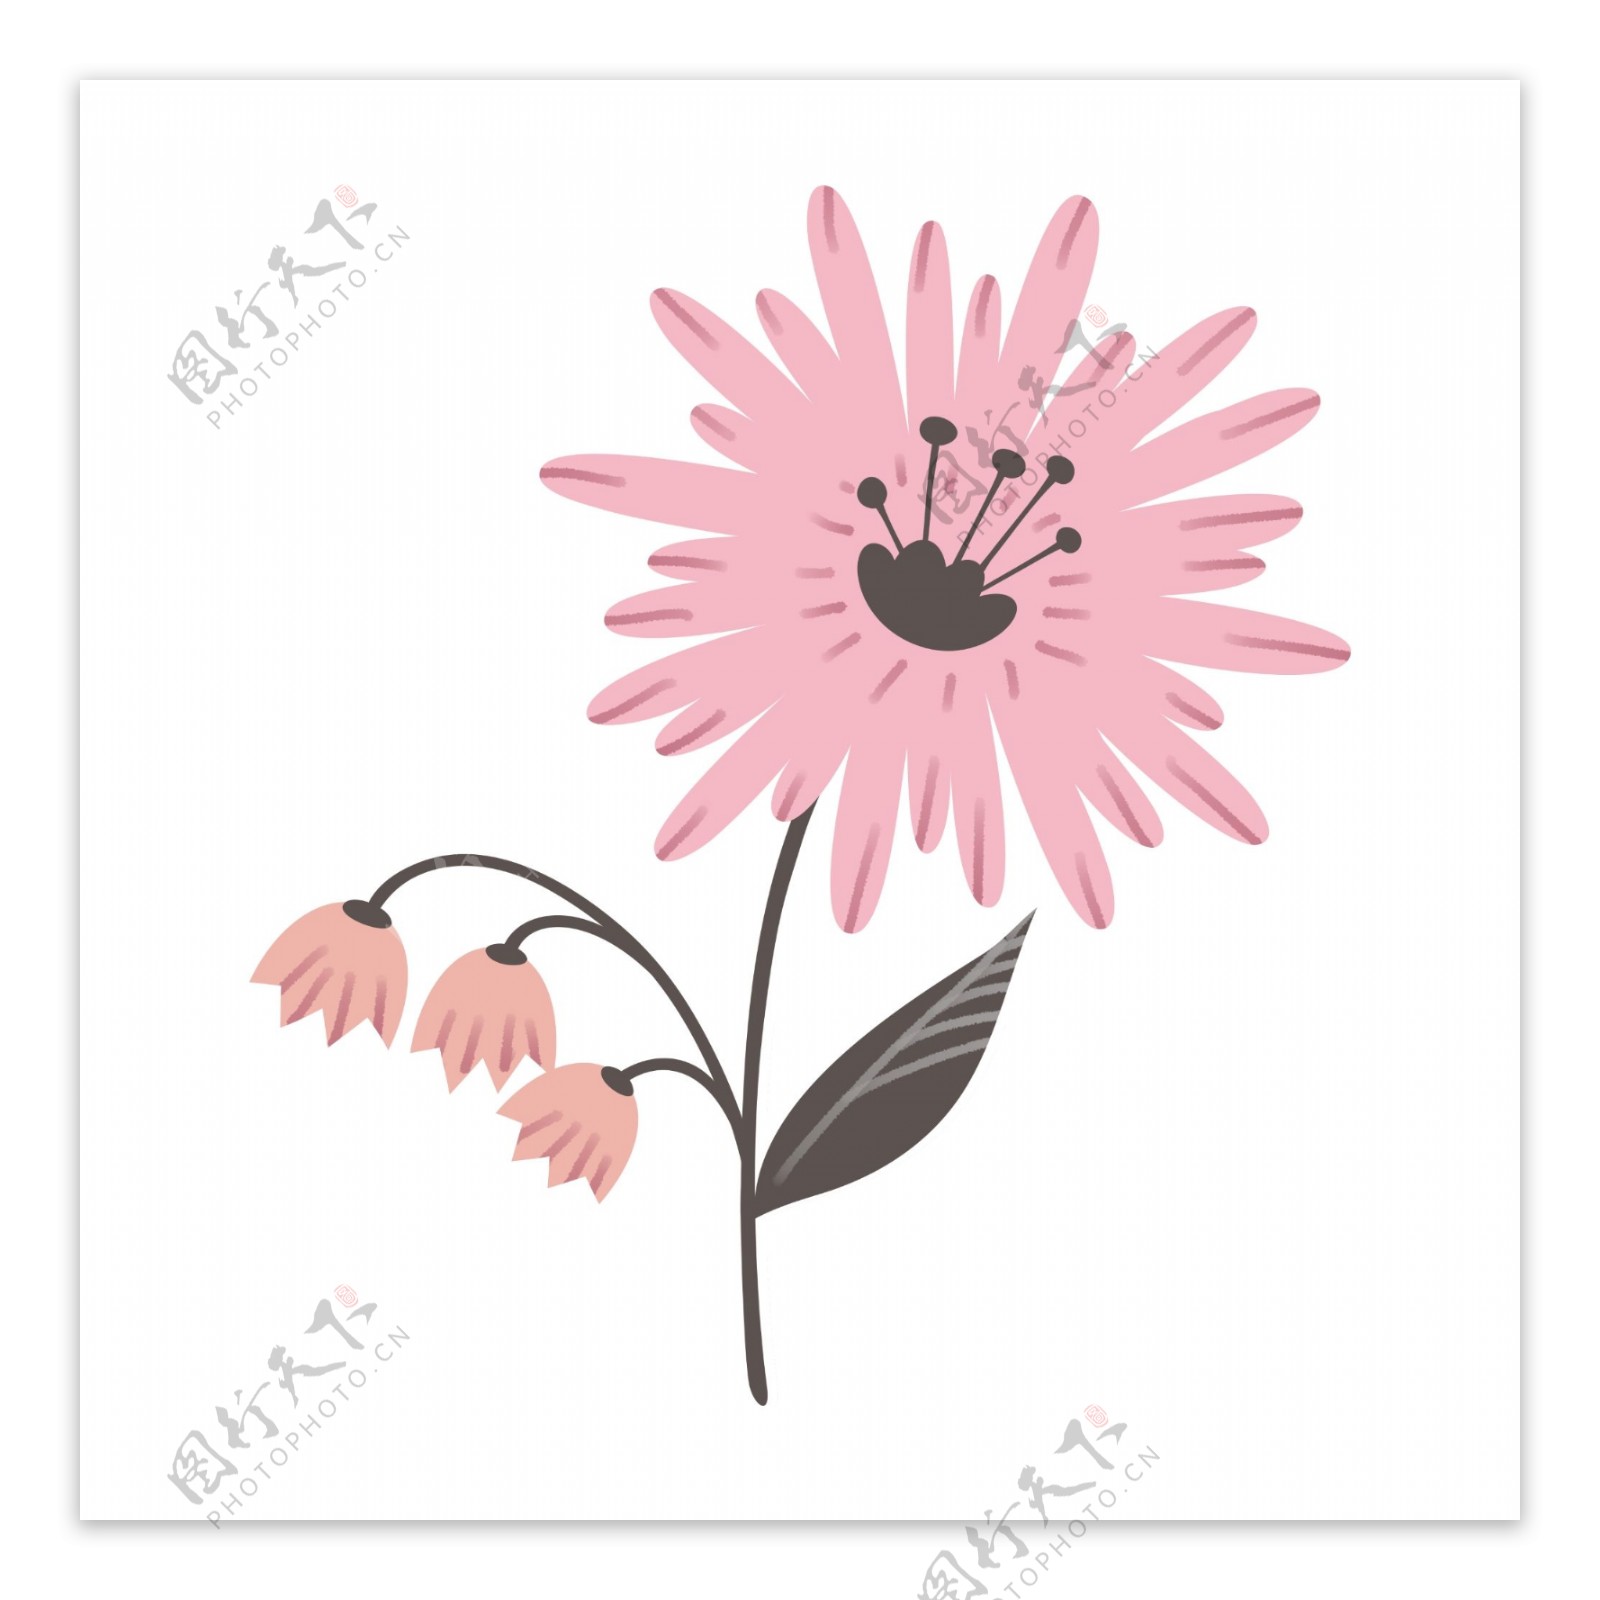 简约的粉红色花朵插图